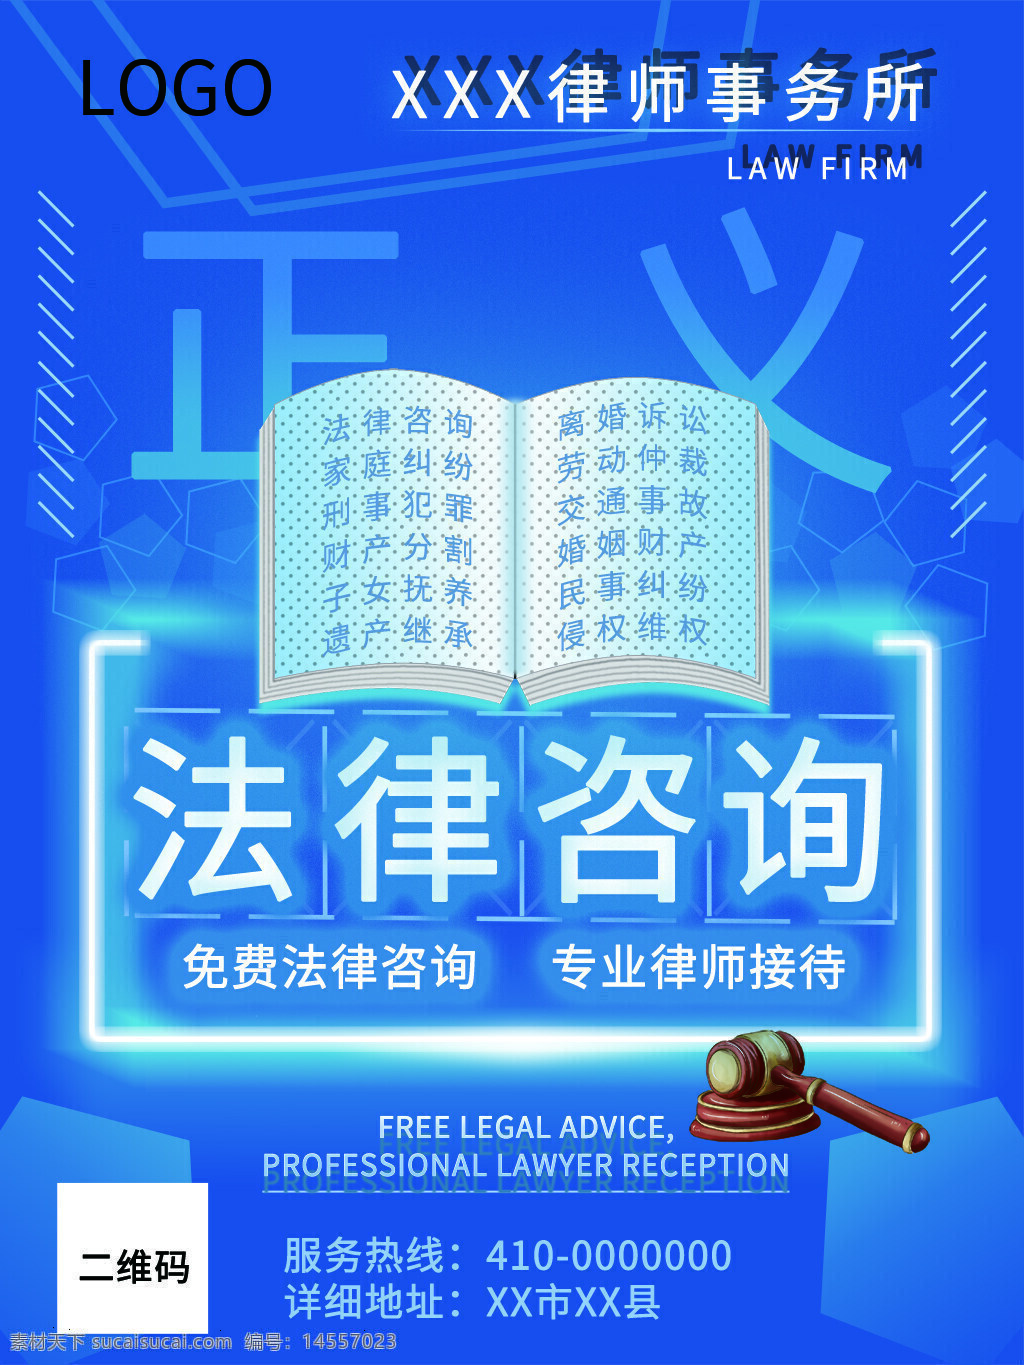 法律 法律咨询 法律海报 蓝色背景 律师事务所